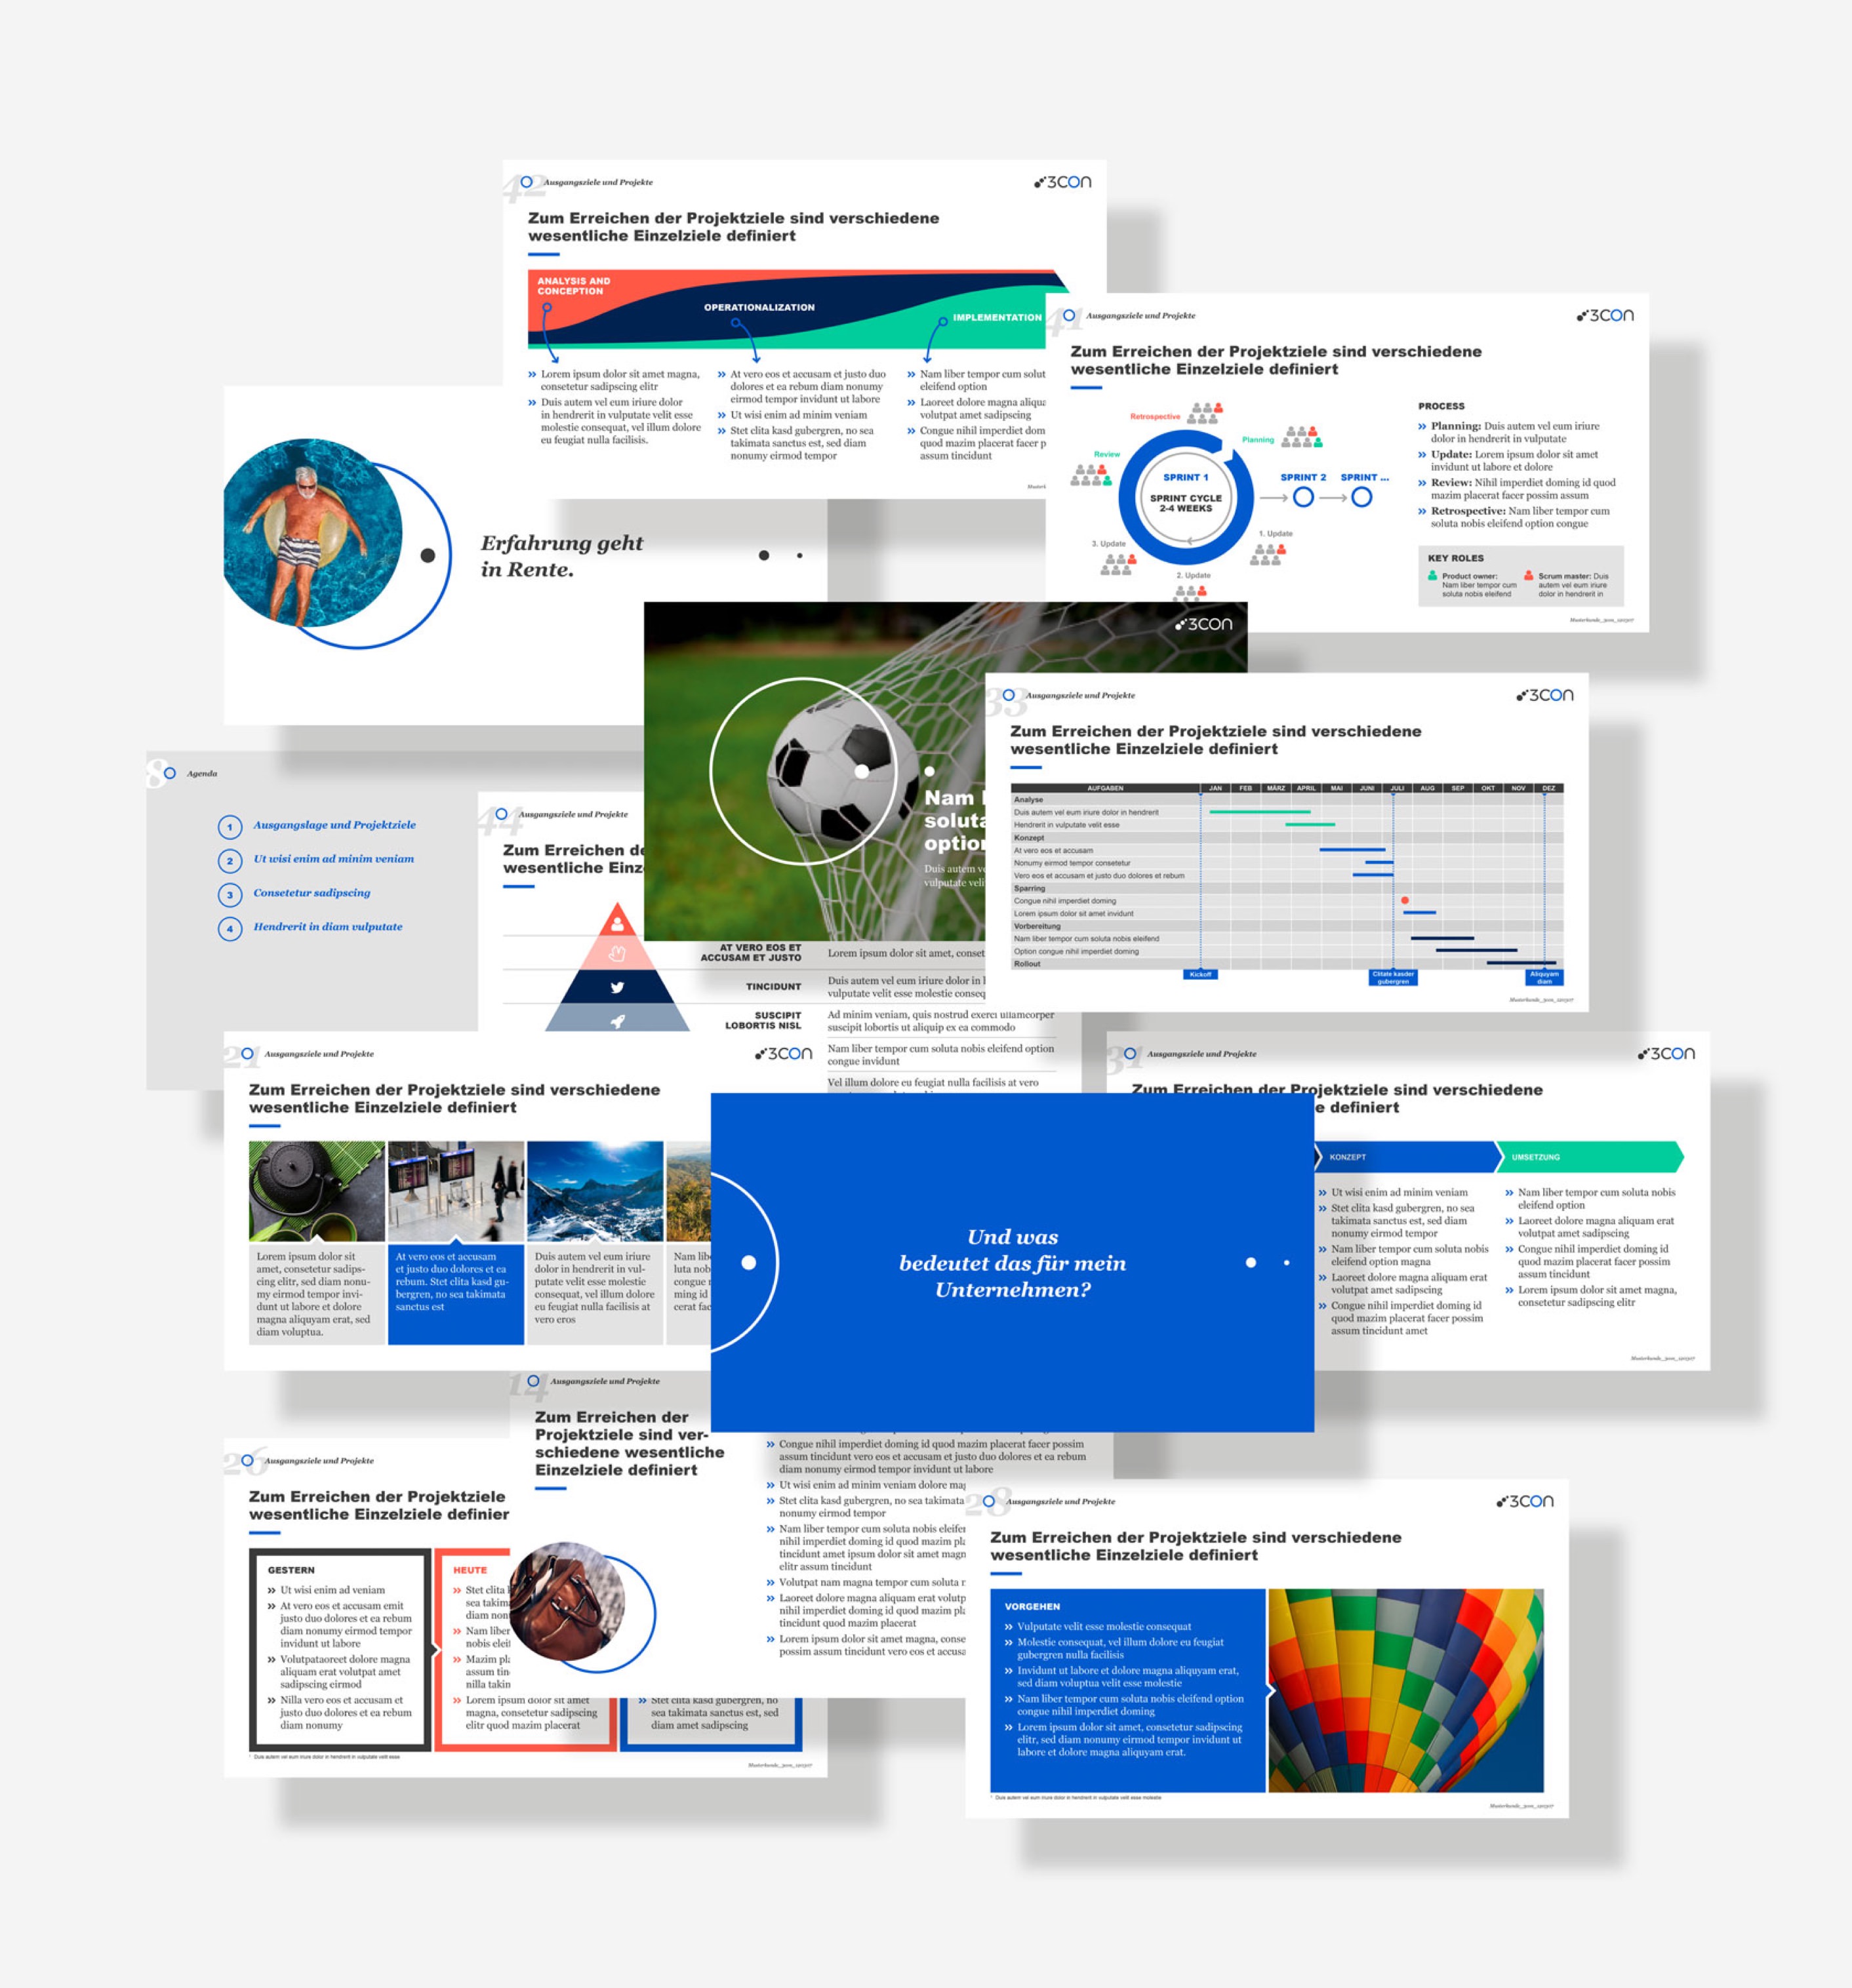 3con Corporate Design auf PowerPoint-Folien.